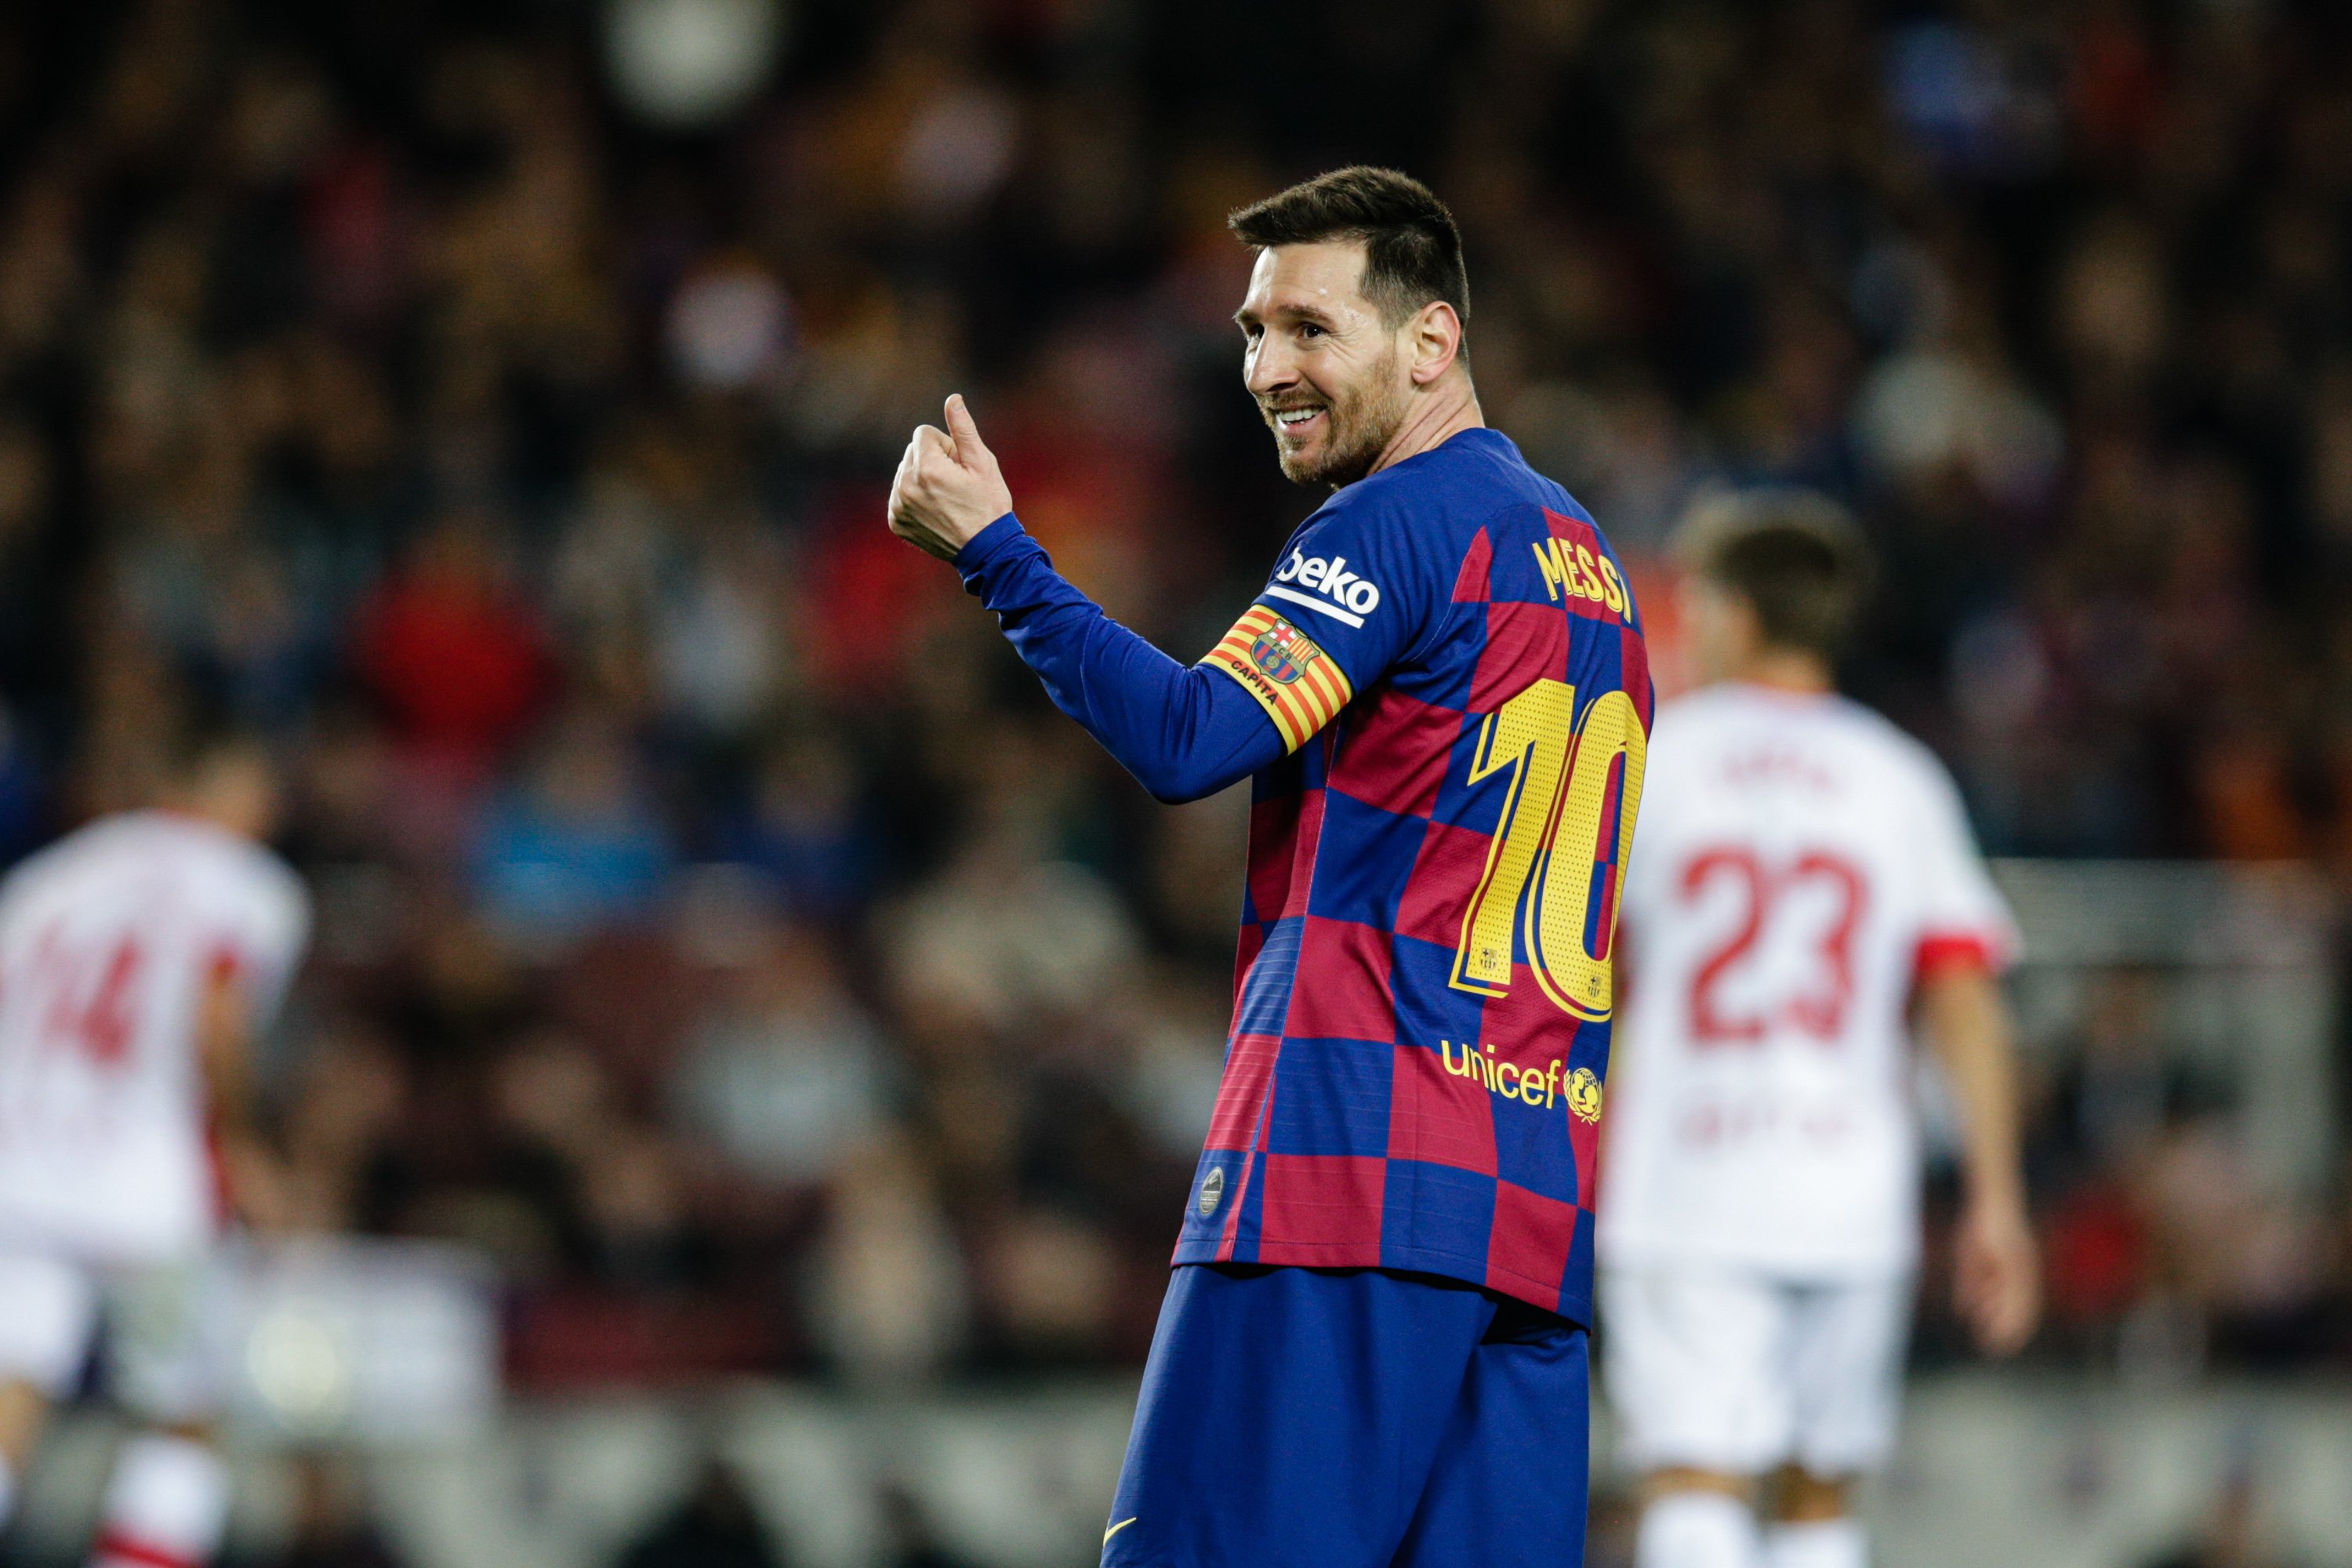 Una llegenda del Bayern menysprea el Barça i dispara contra Messi